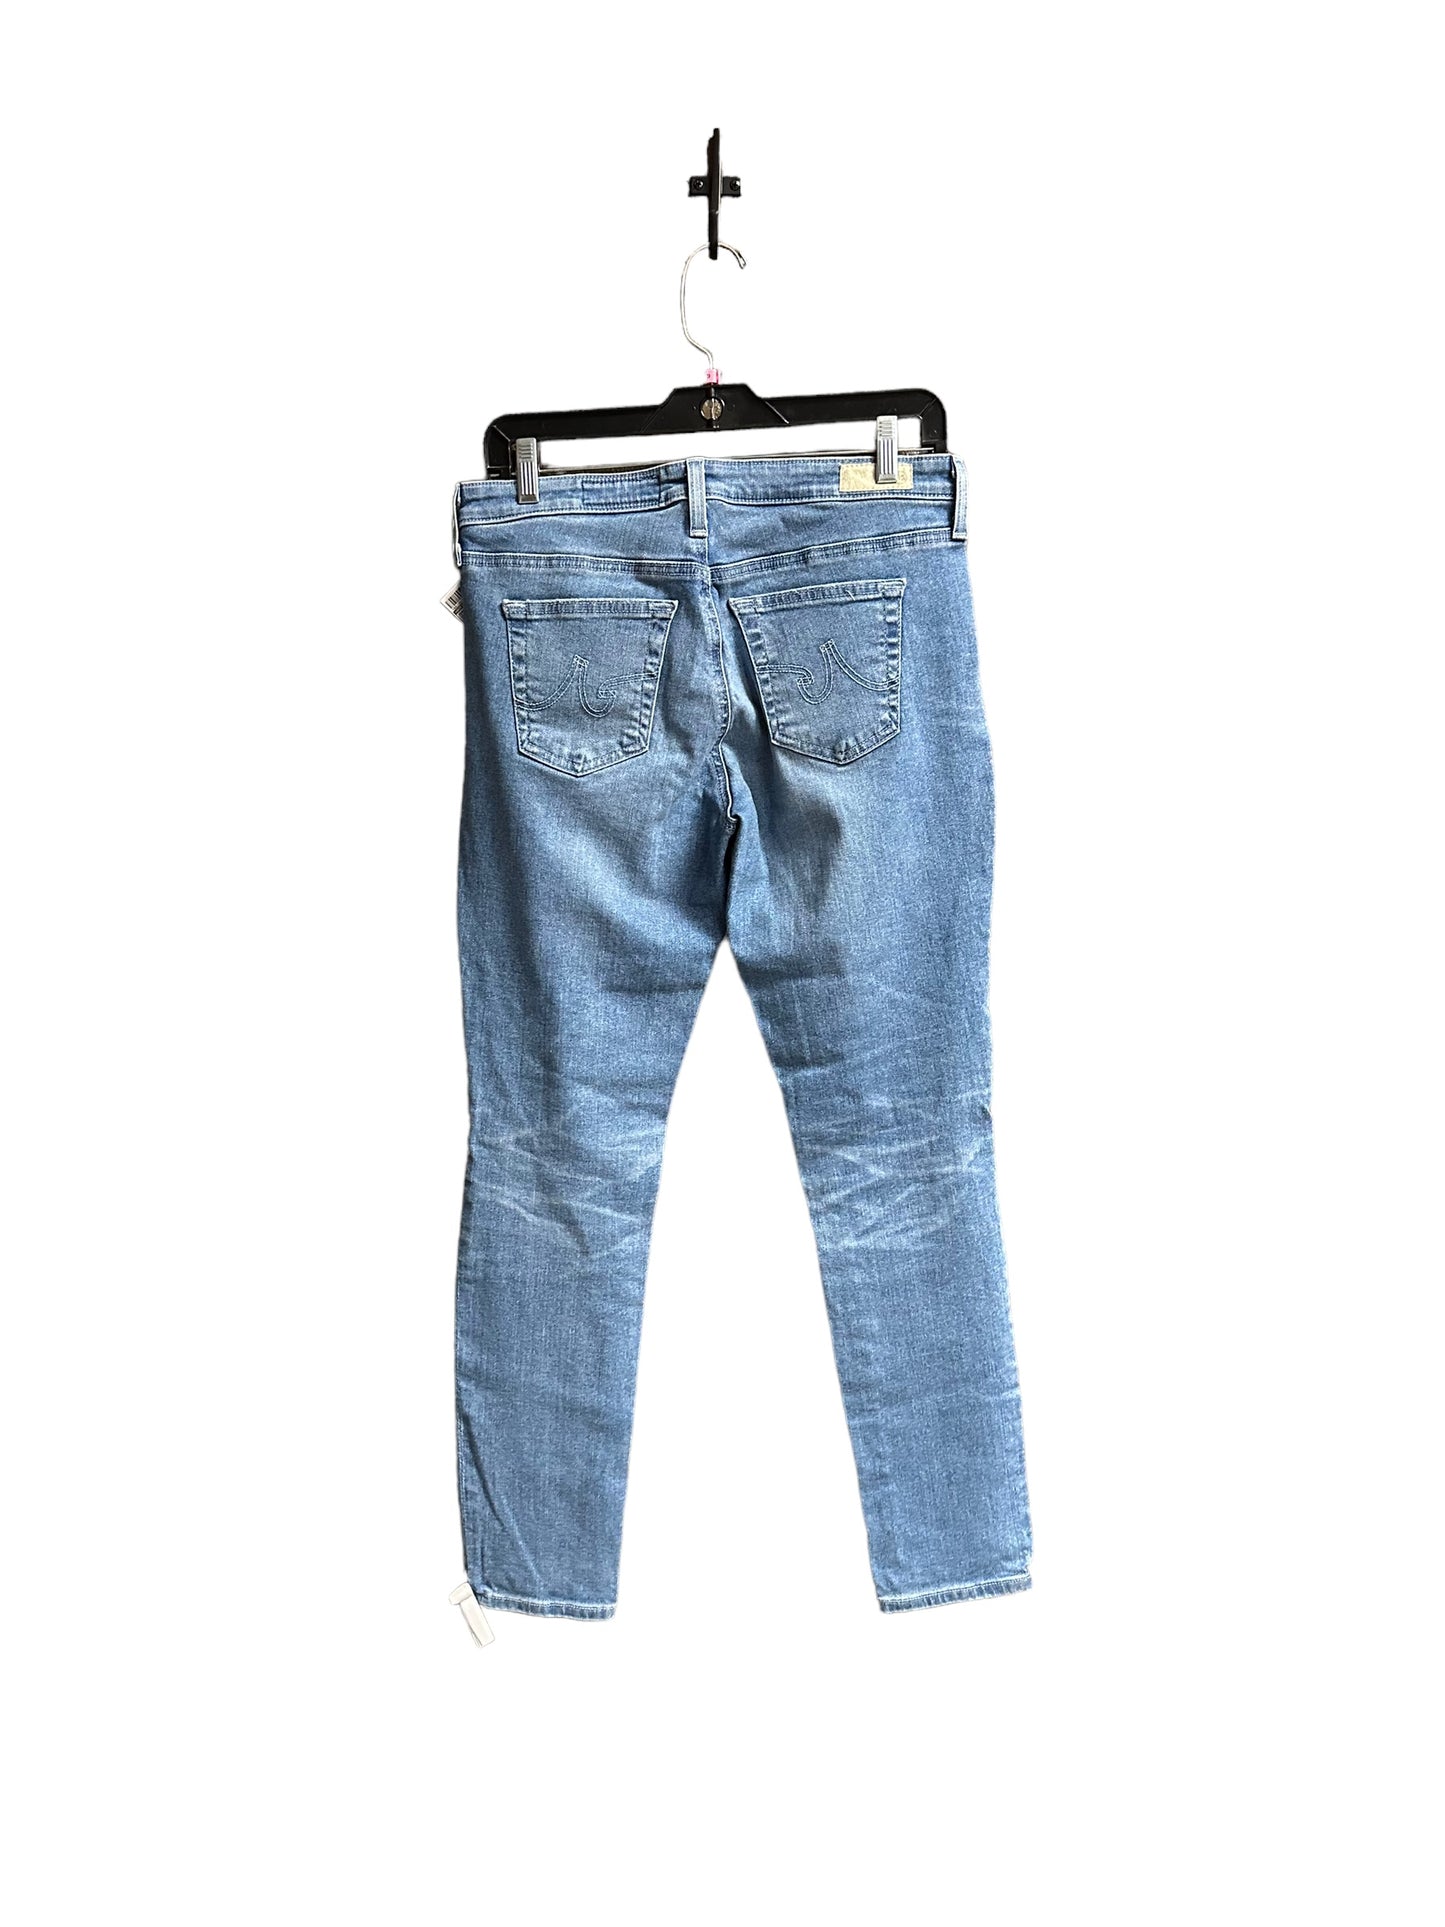 Jeans Skinny By Adriano Goldschmied  Size: 6